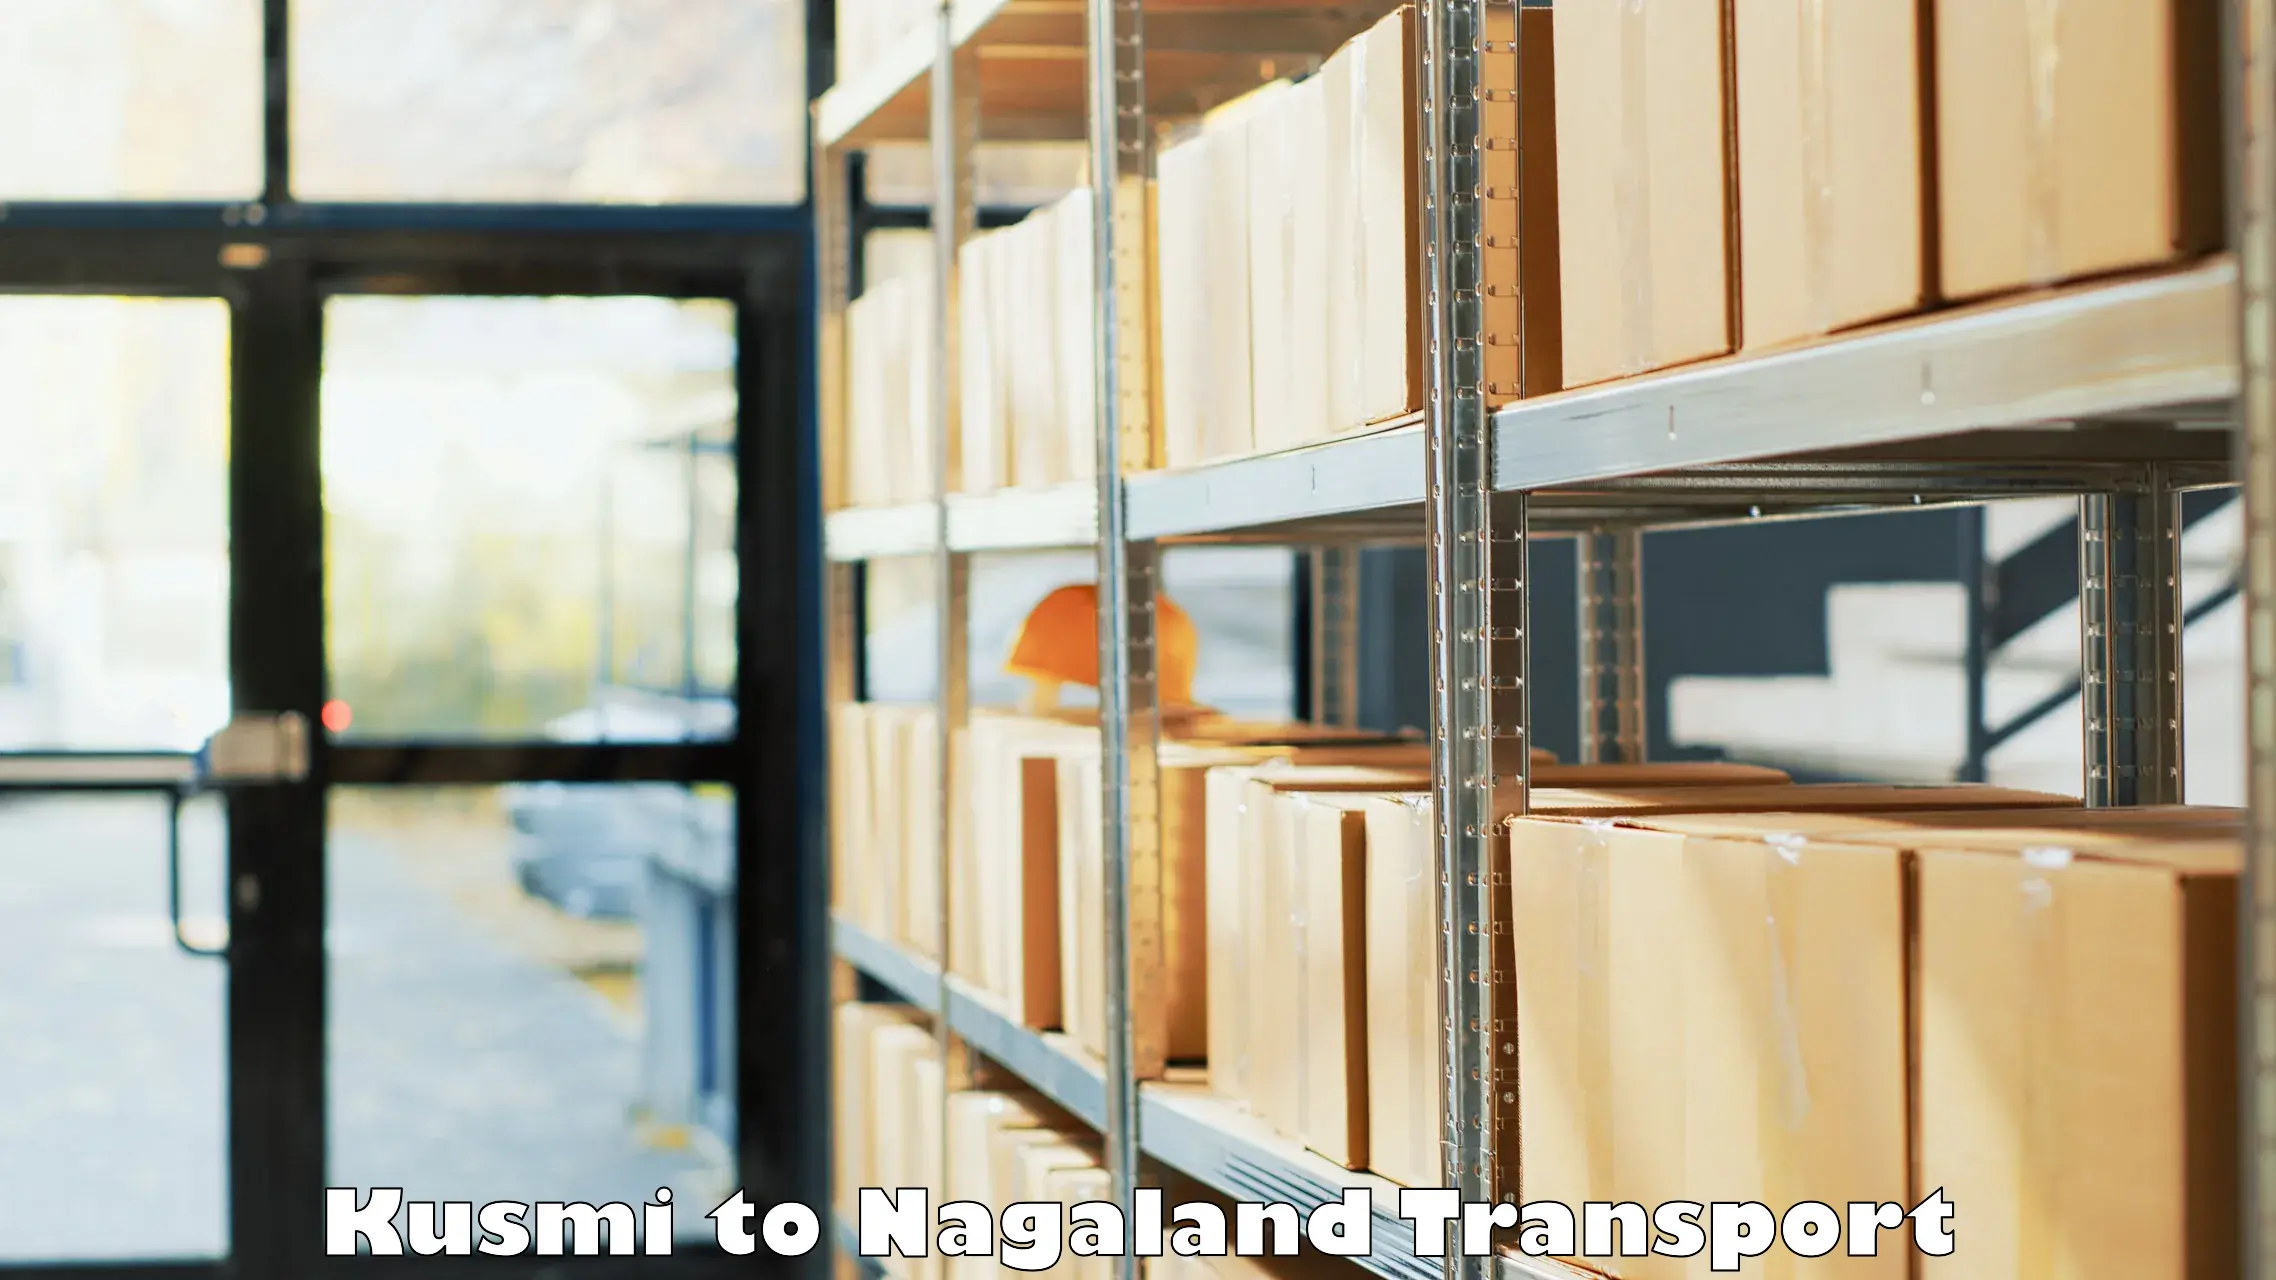 Nearest transport service Kusmi to Nagaland